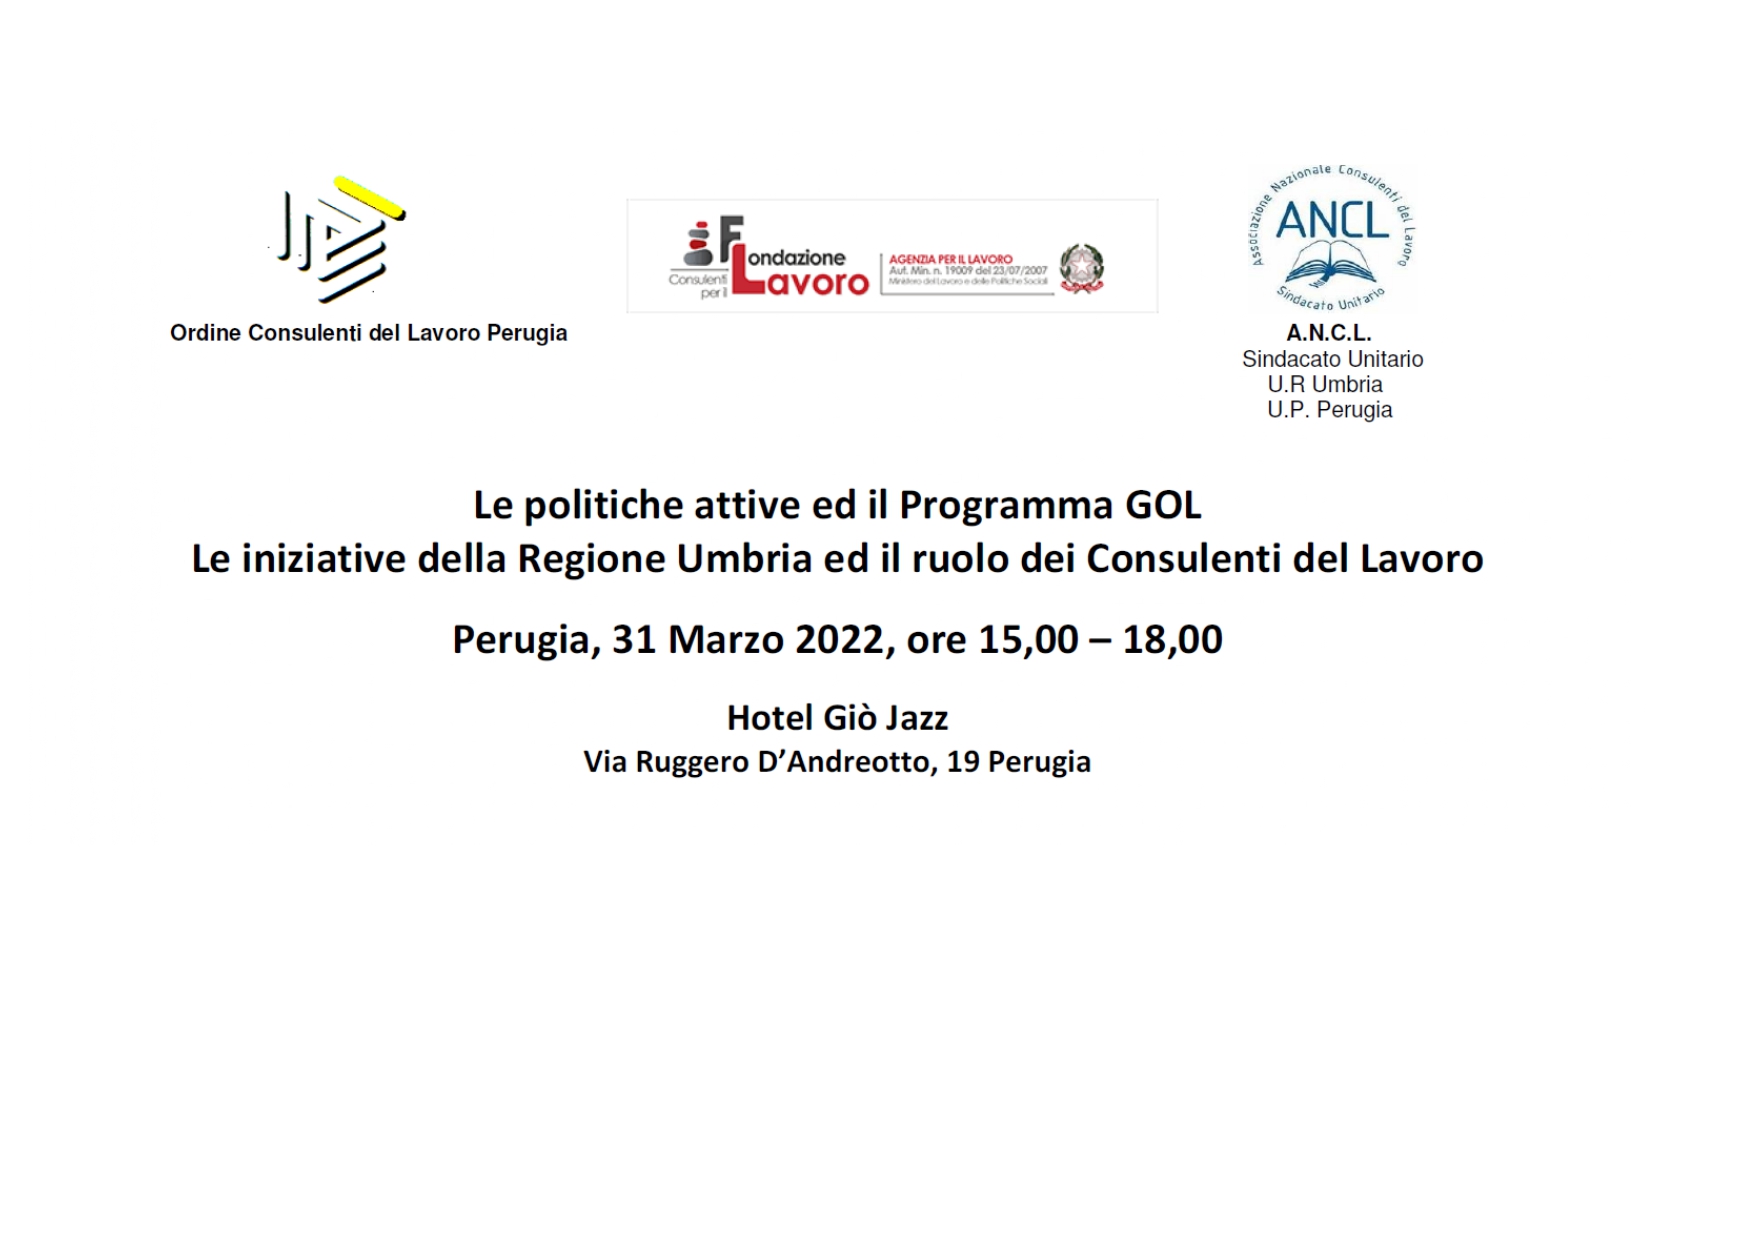 Convegno: Le Politiche Attive ed il Programma GOL. Le iniziative della Regione Umbria ed il ruolo dei Consulenti del Lavoro Perugia 31 marzo 2022 ore 15:00-18:00